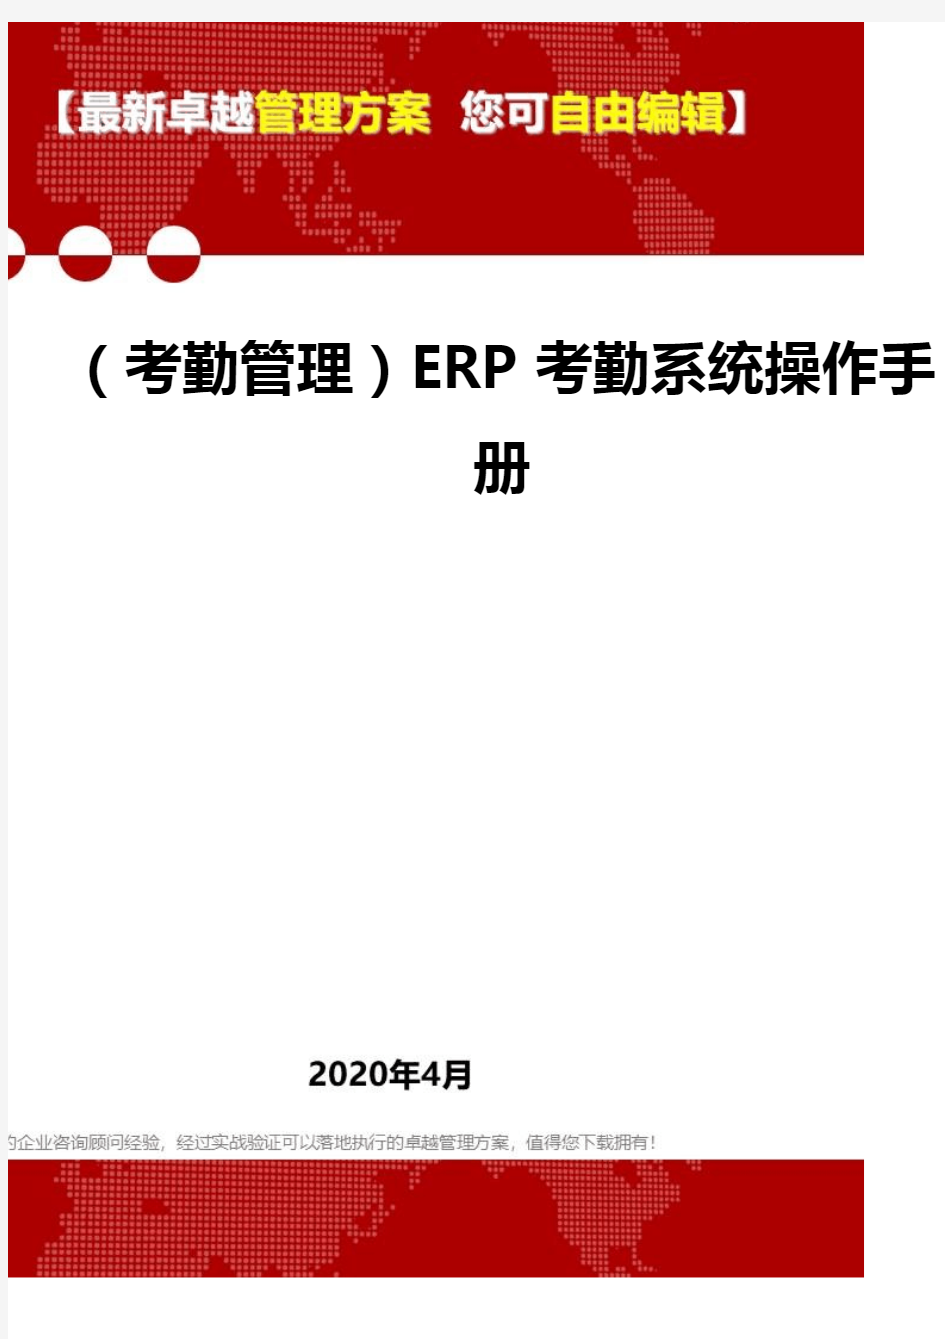 【考勤类】ERP考勤系统操作手册